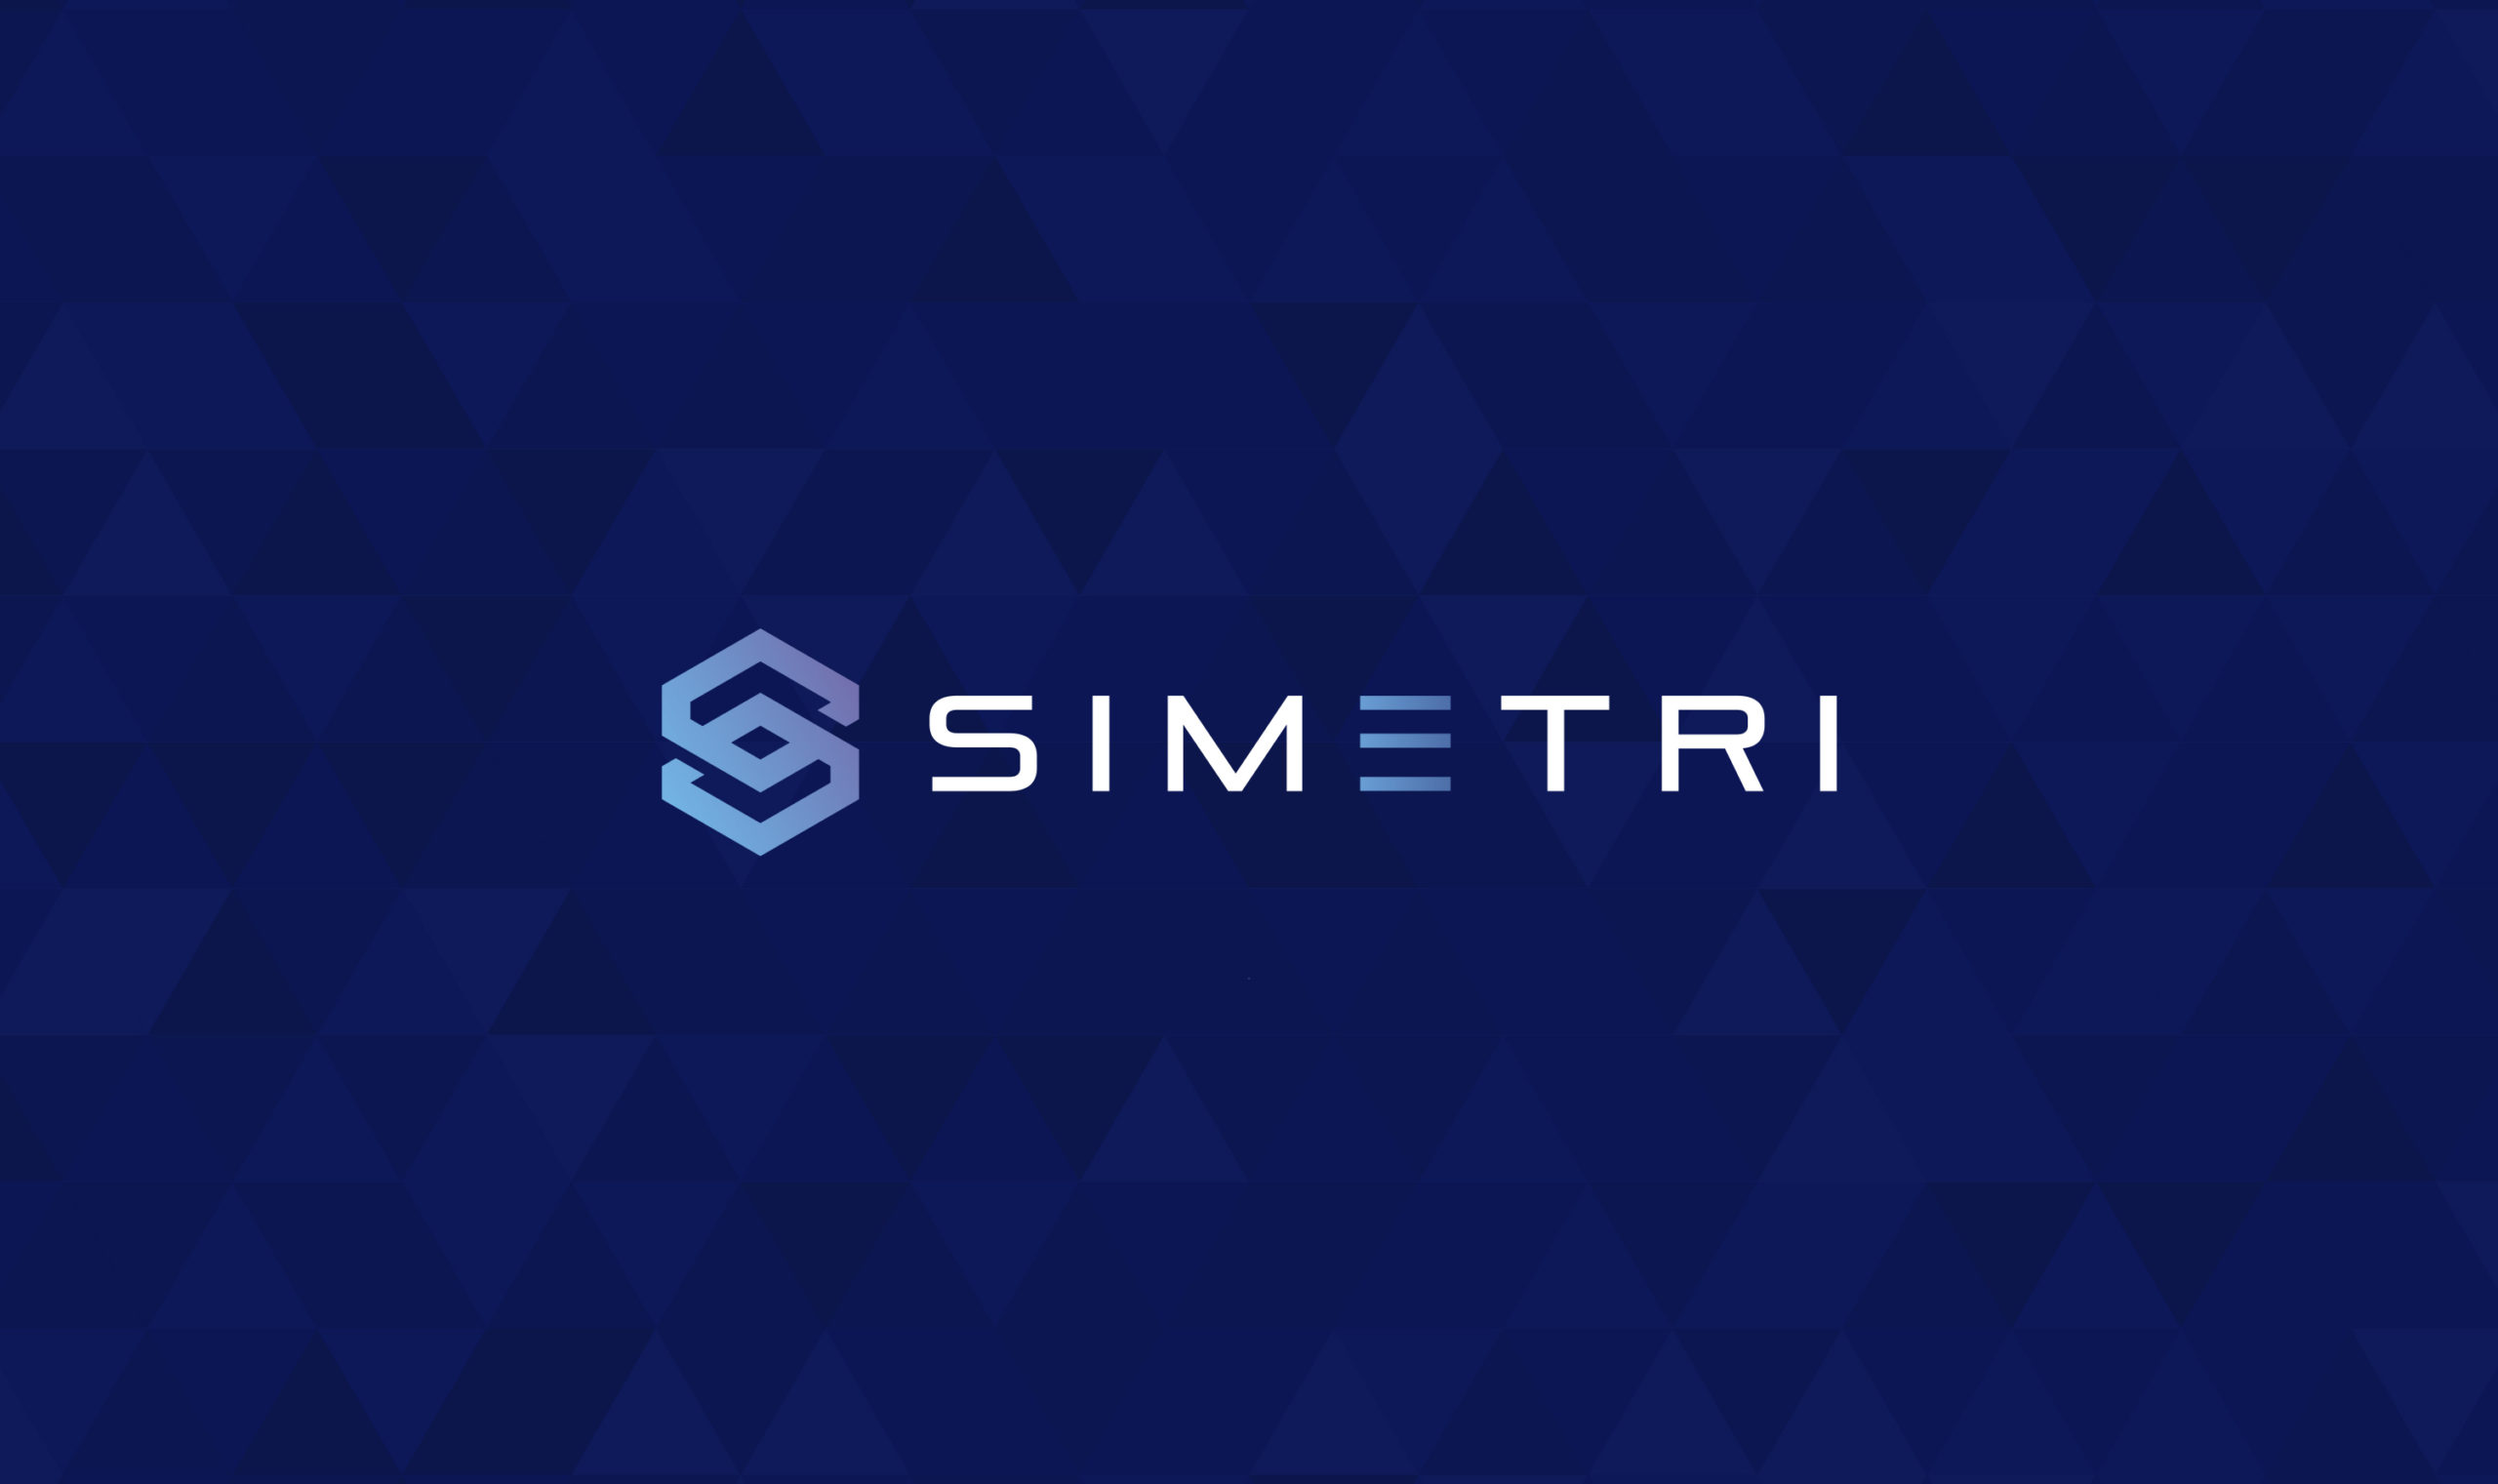 simetri.cryptobriefing.com